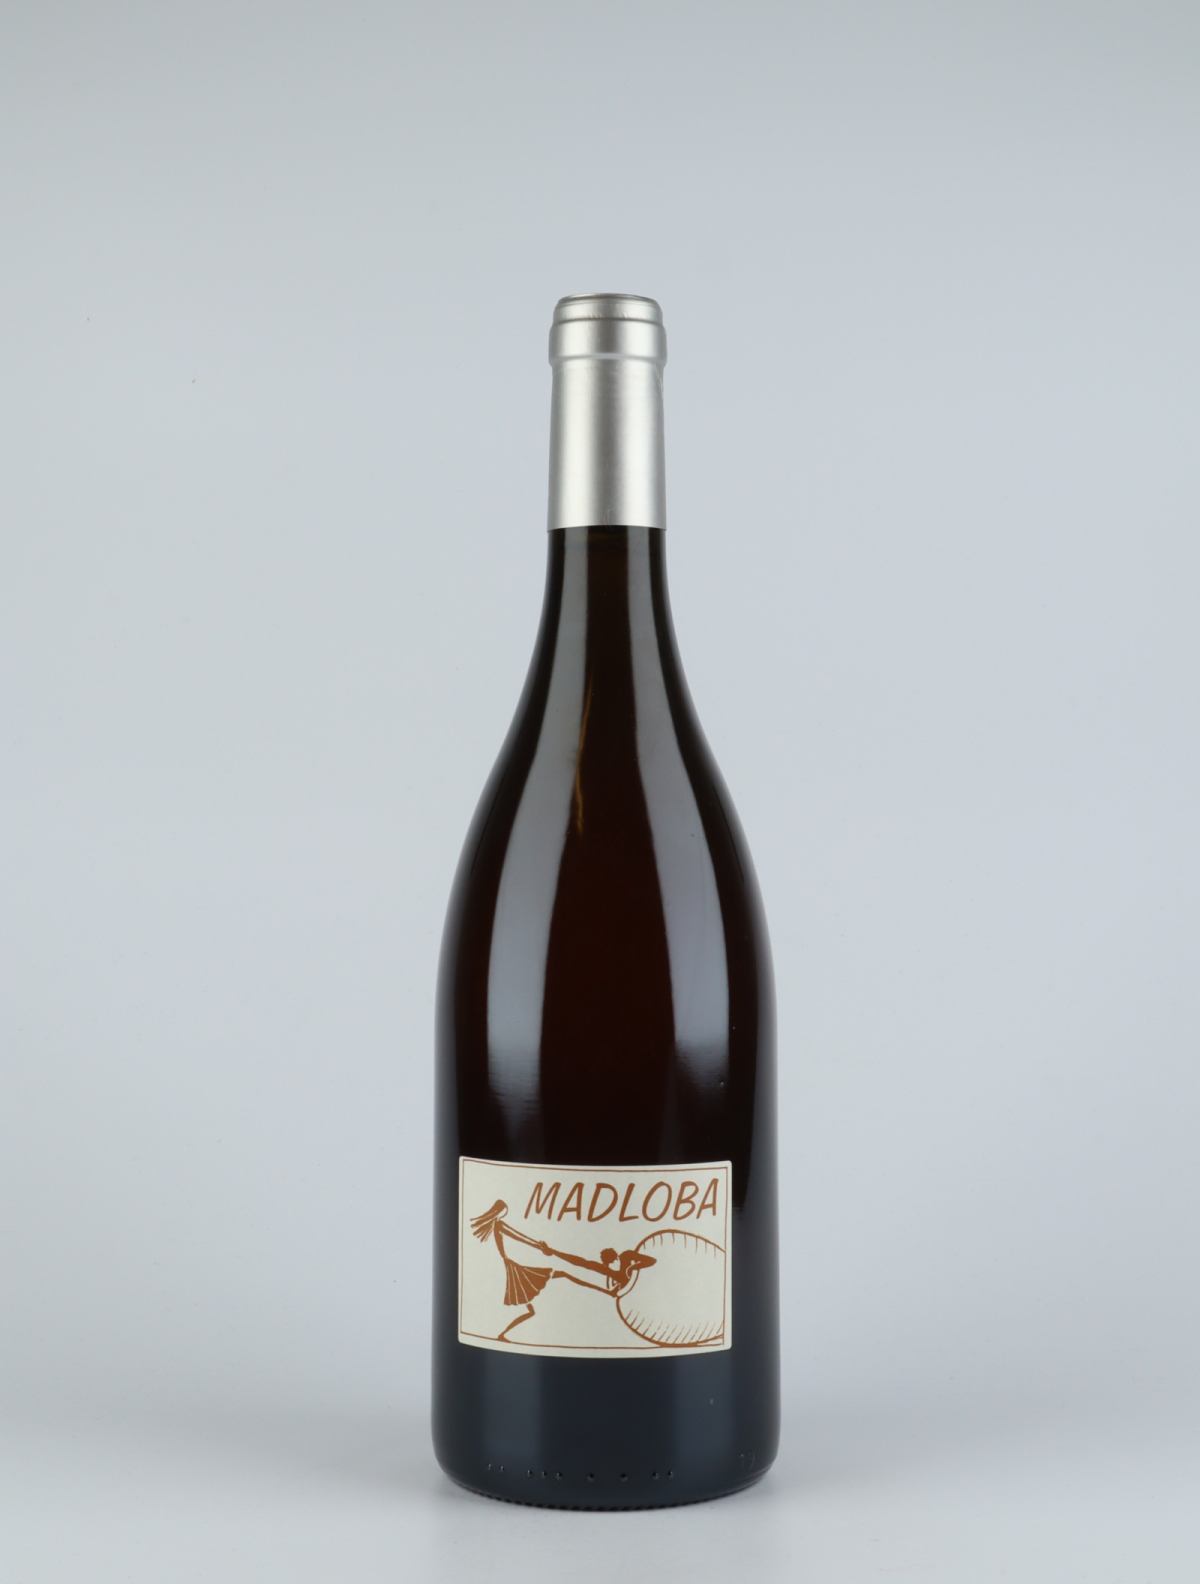 En flaske 2016 Madloba Ambré Orange vin fra Domaine des Miquettes, Rhône i Frankrig